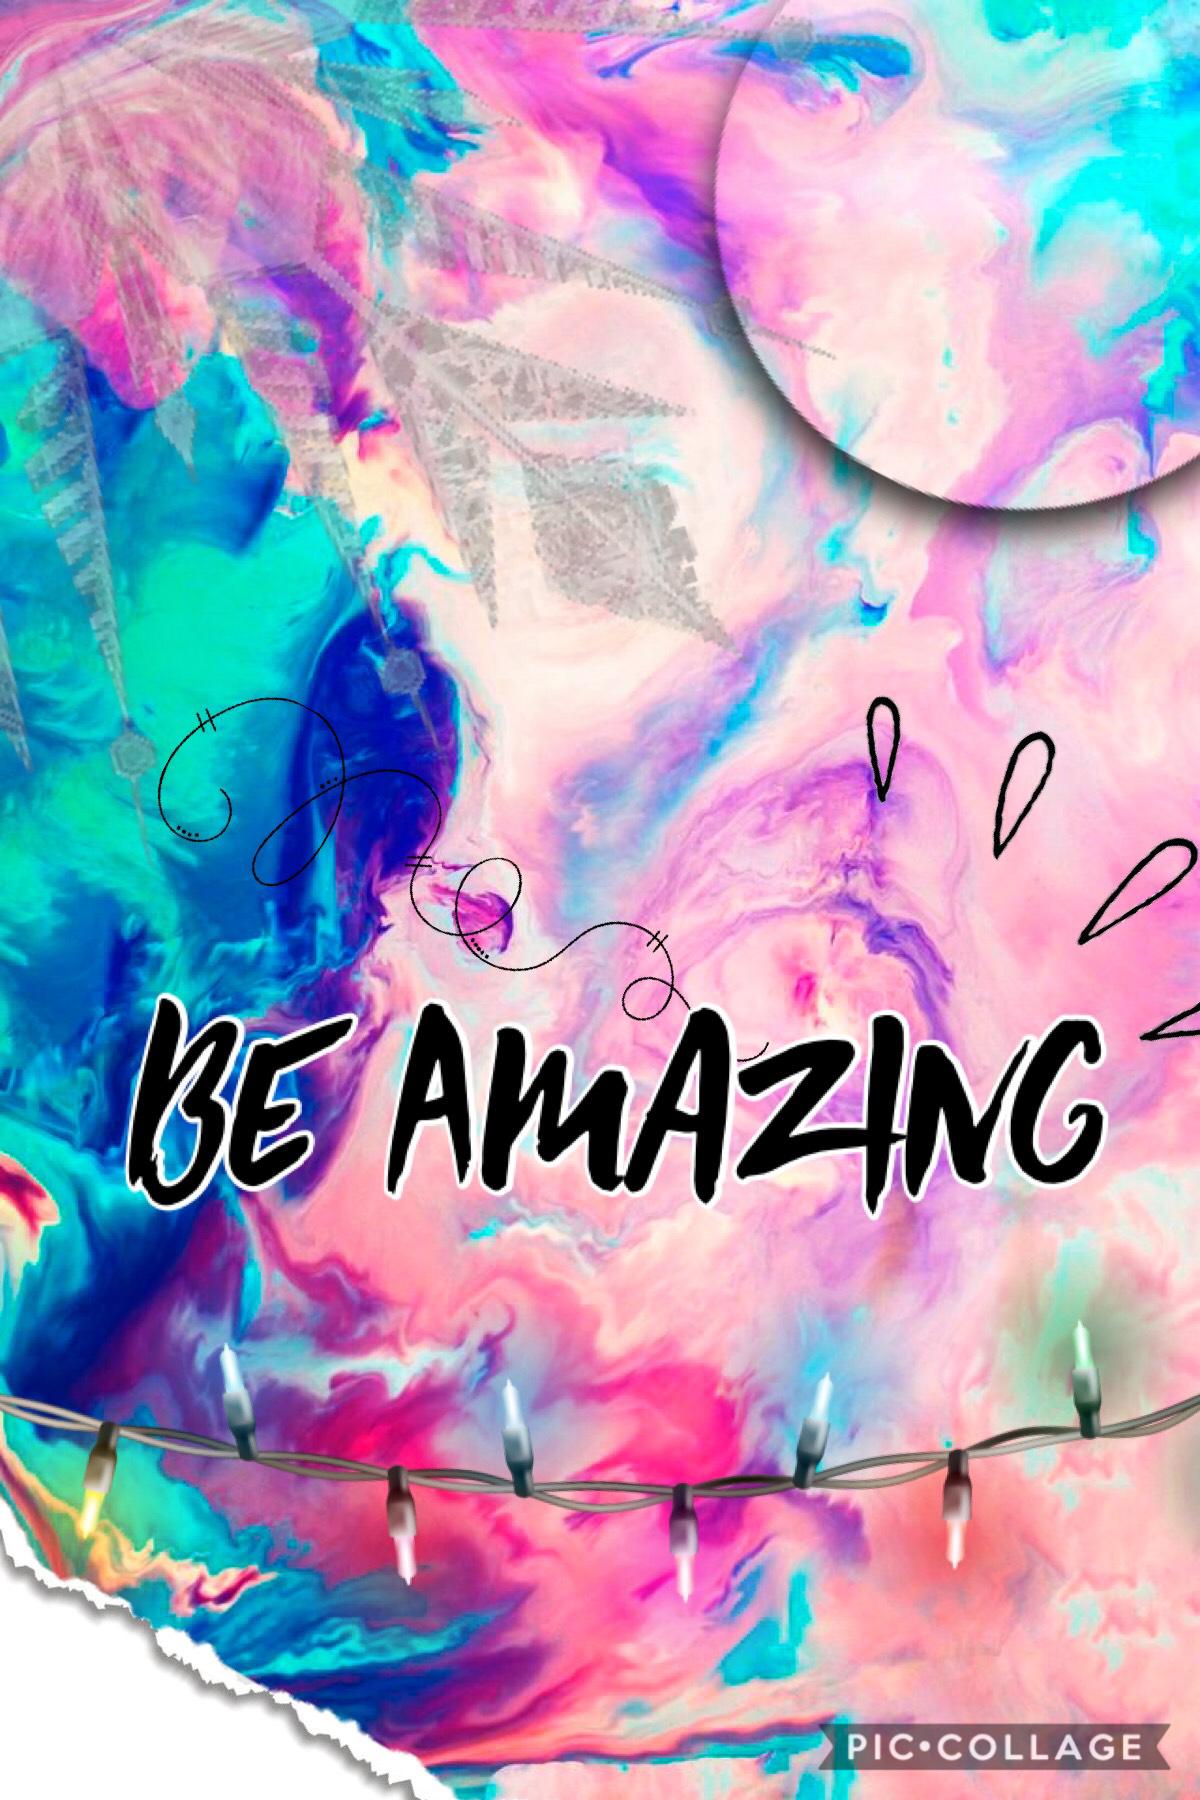 Be Amazing 😉 